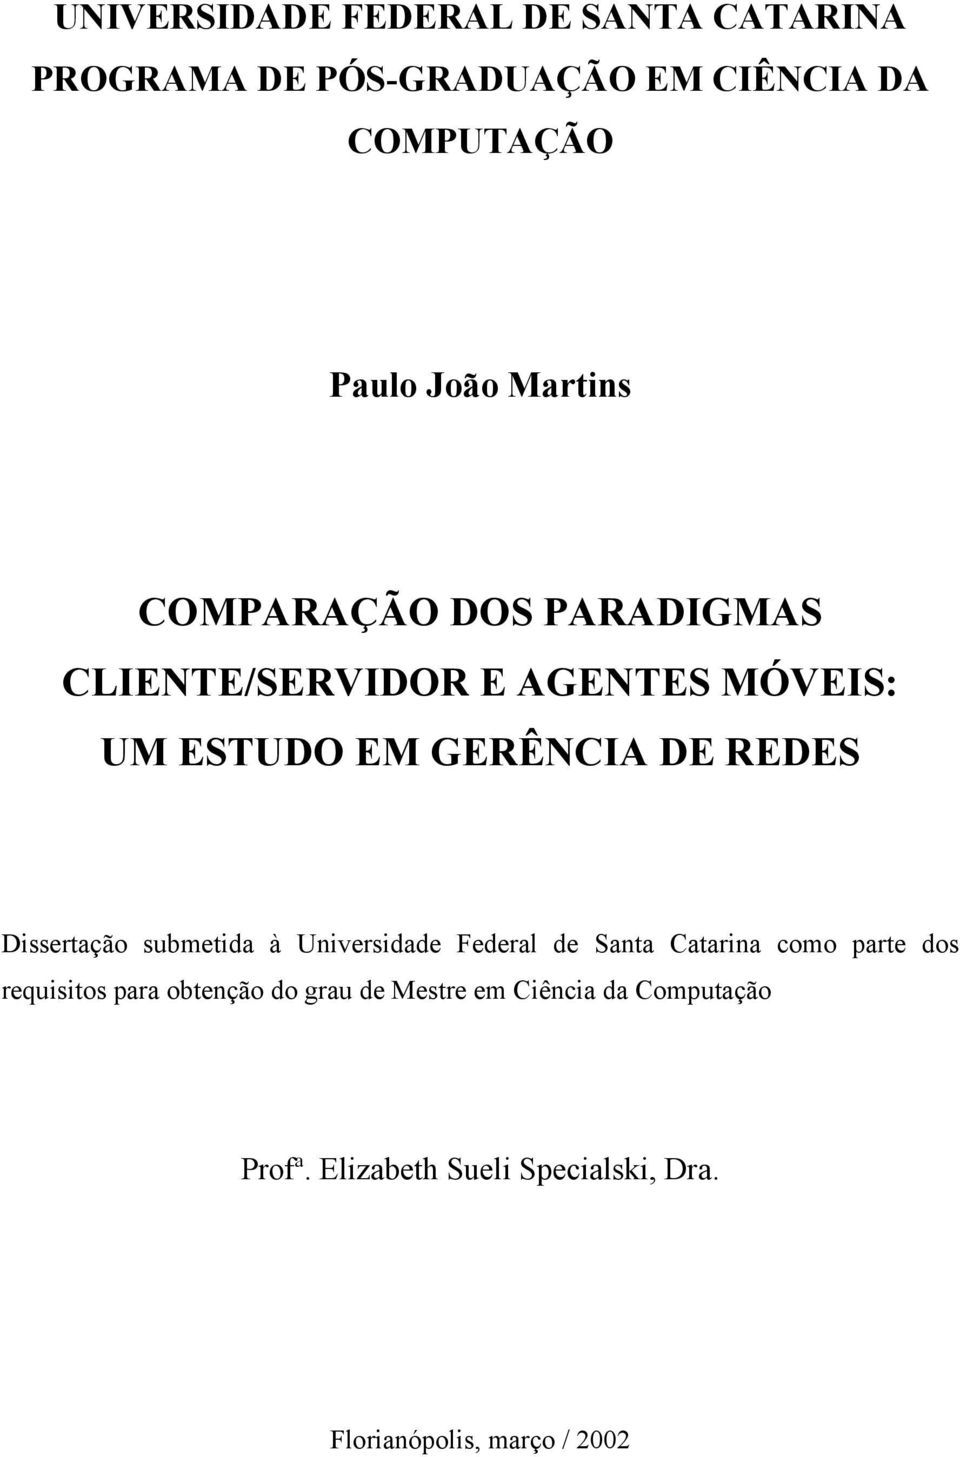 Dissertação submetida à Universidade Federal de Santa Catarina como parte dos requisitos para obtenção